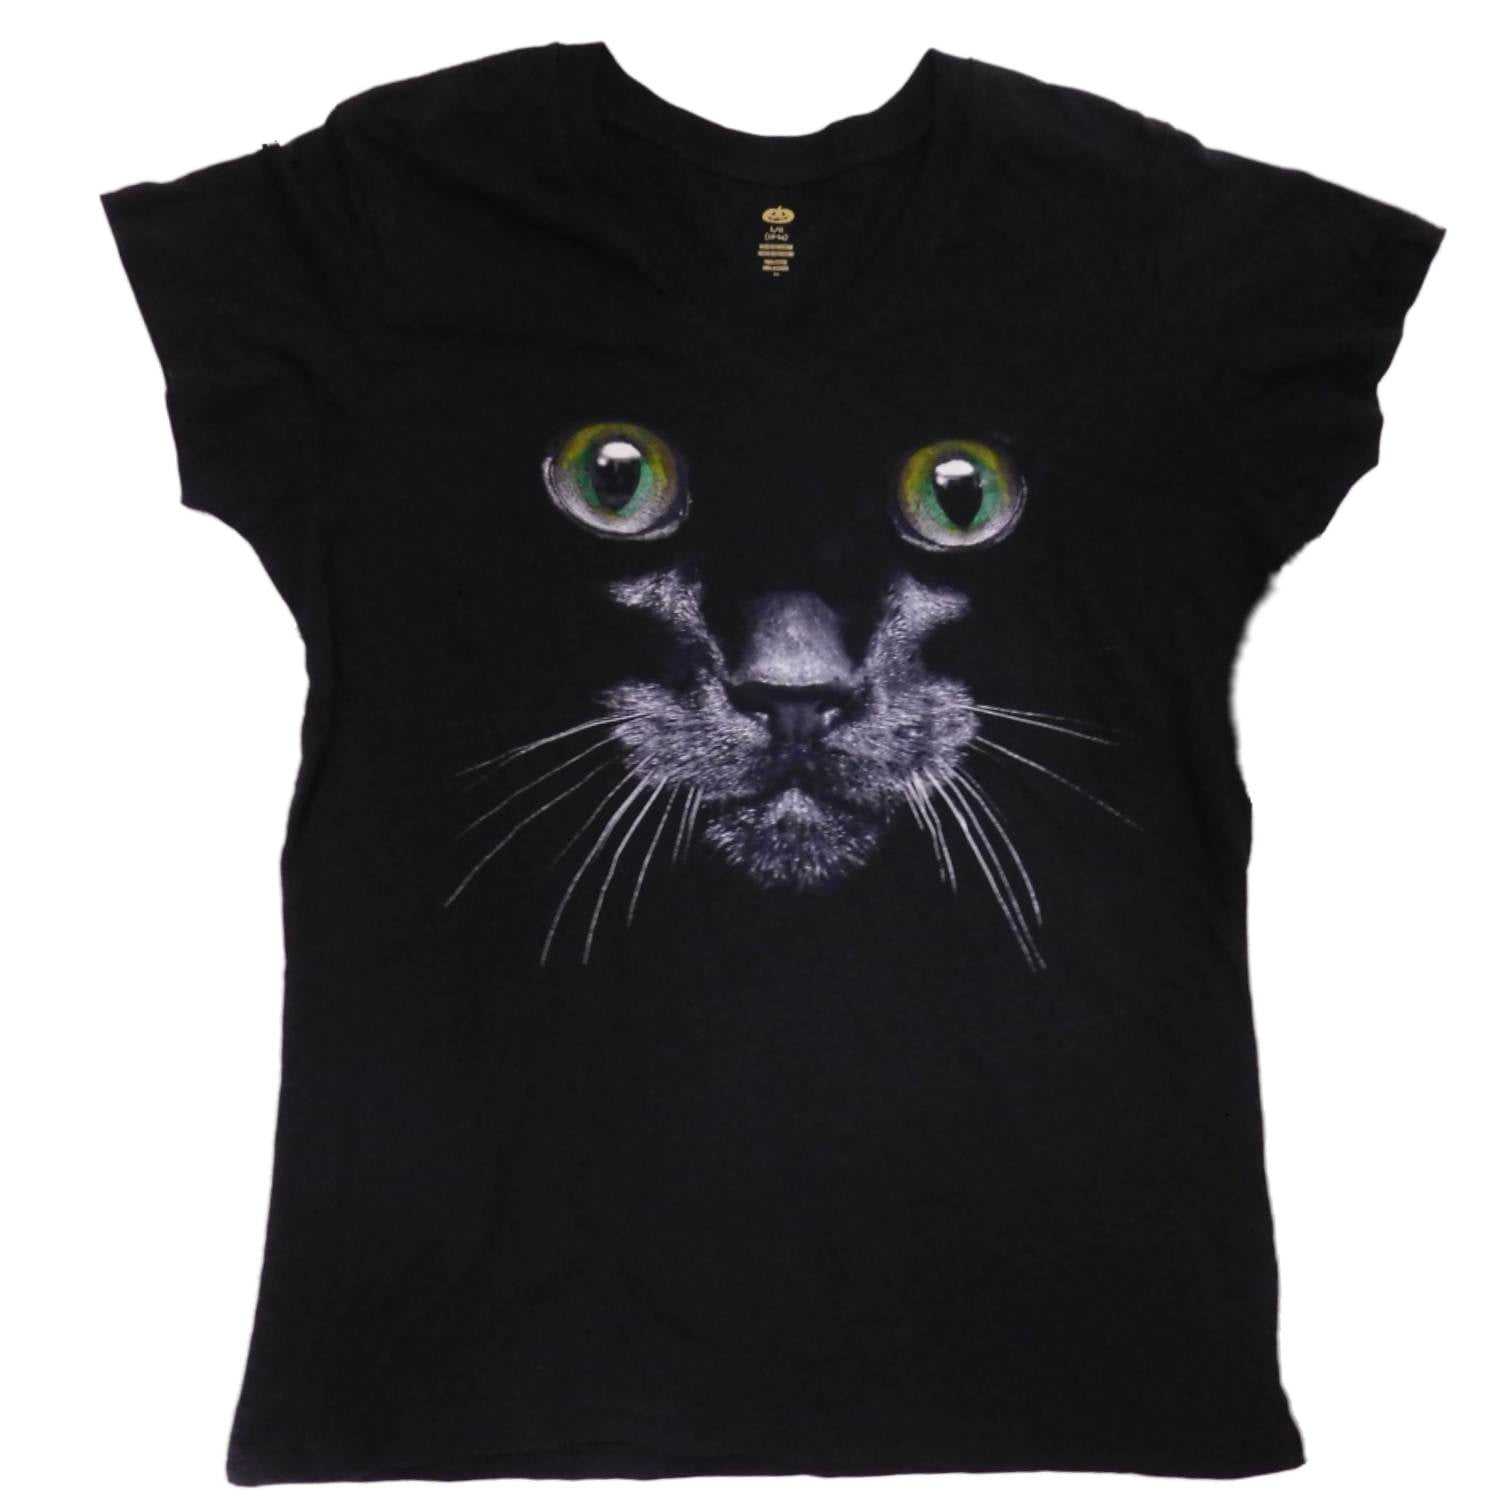 Halloween Cat Shirt Cute Halloween Shirt Halloween Tshirt Kawaii Halloween Cat Shirts Kawaii Cat Shirt Spooky Ghost Cat Gift Black Cat